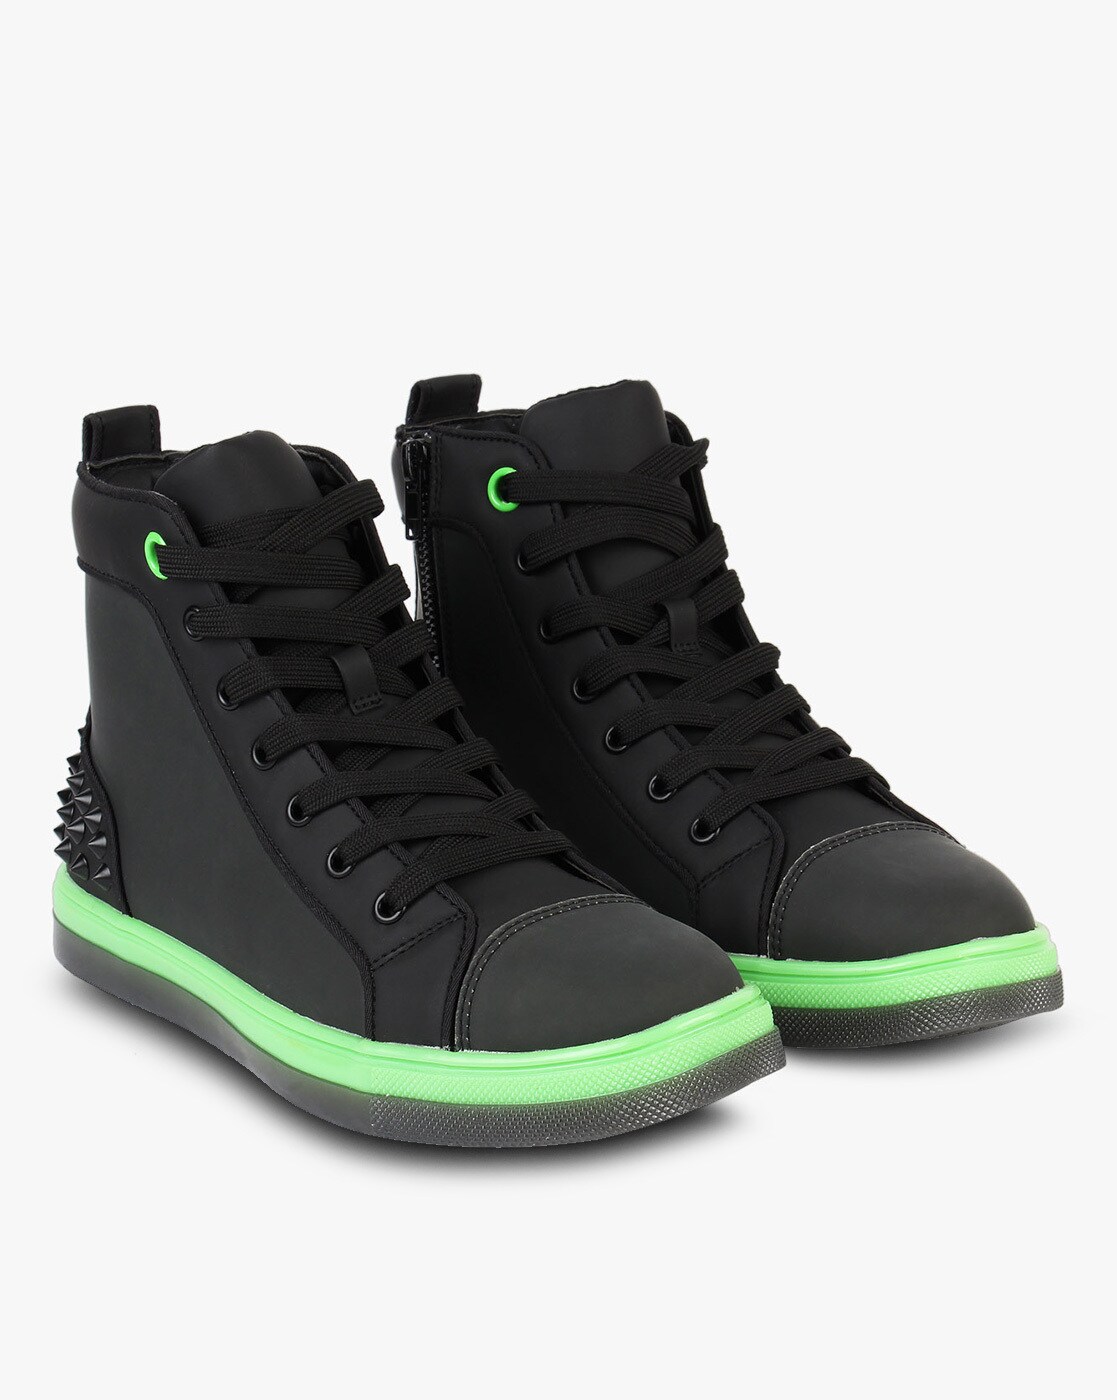 steve madden green sneakers